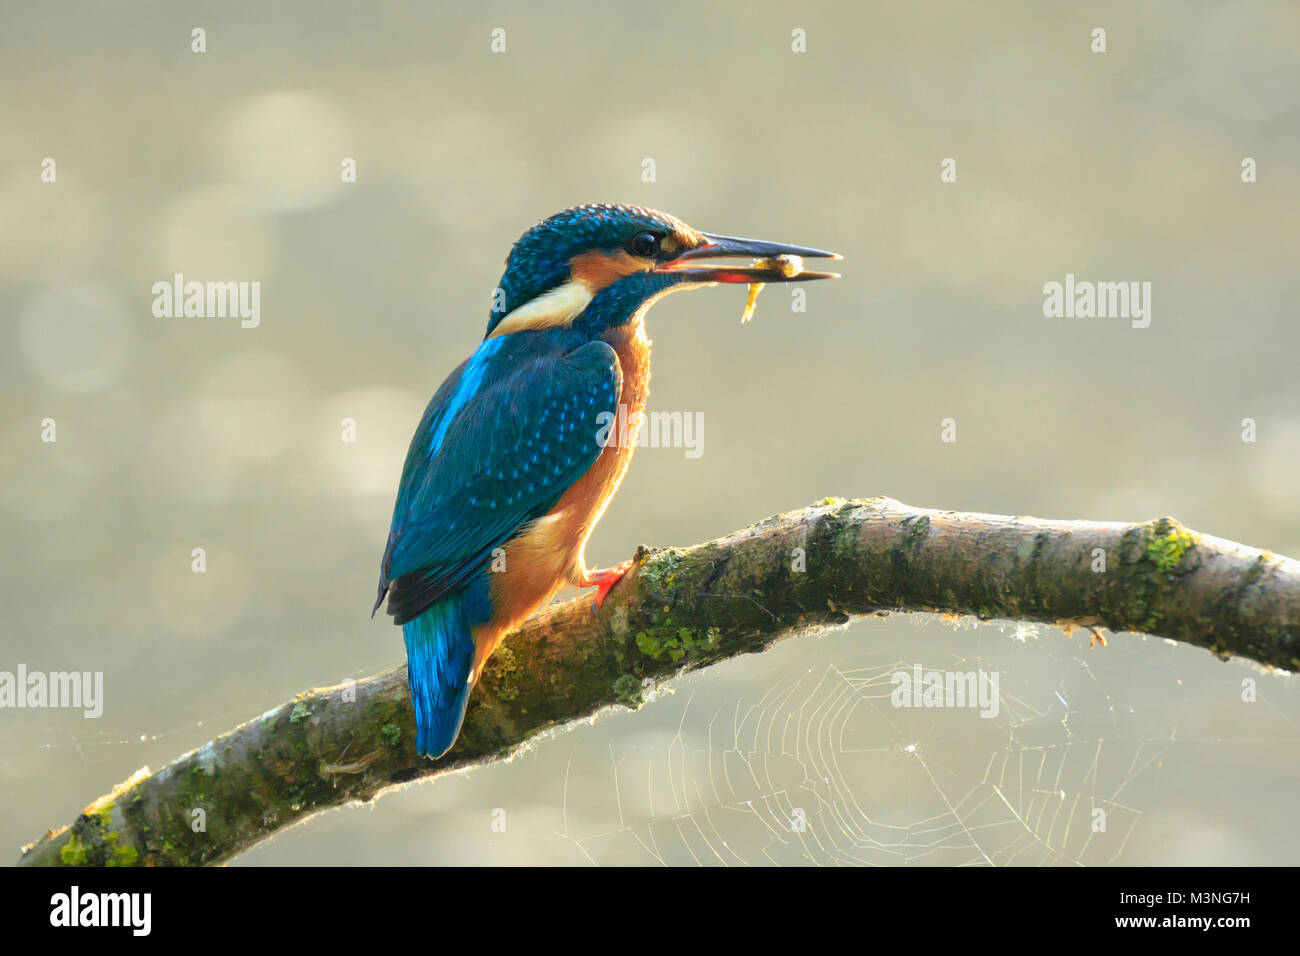 Detaillierte Nahaufnahme der Vogel ein eisvogel Alcedo atthis fangen und essen ein kleiner Fisch in der frühen Morgensonne im Frühling Saison. Stockfoto